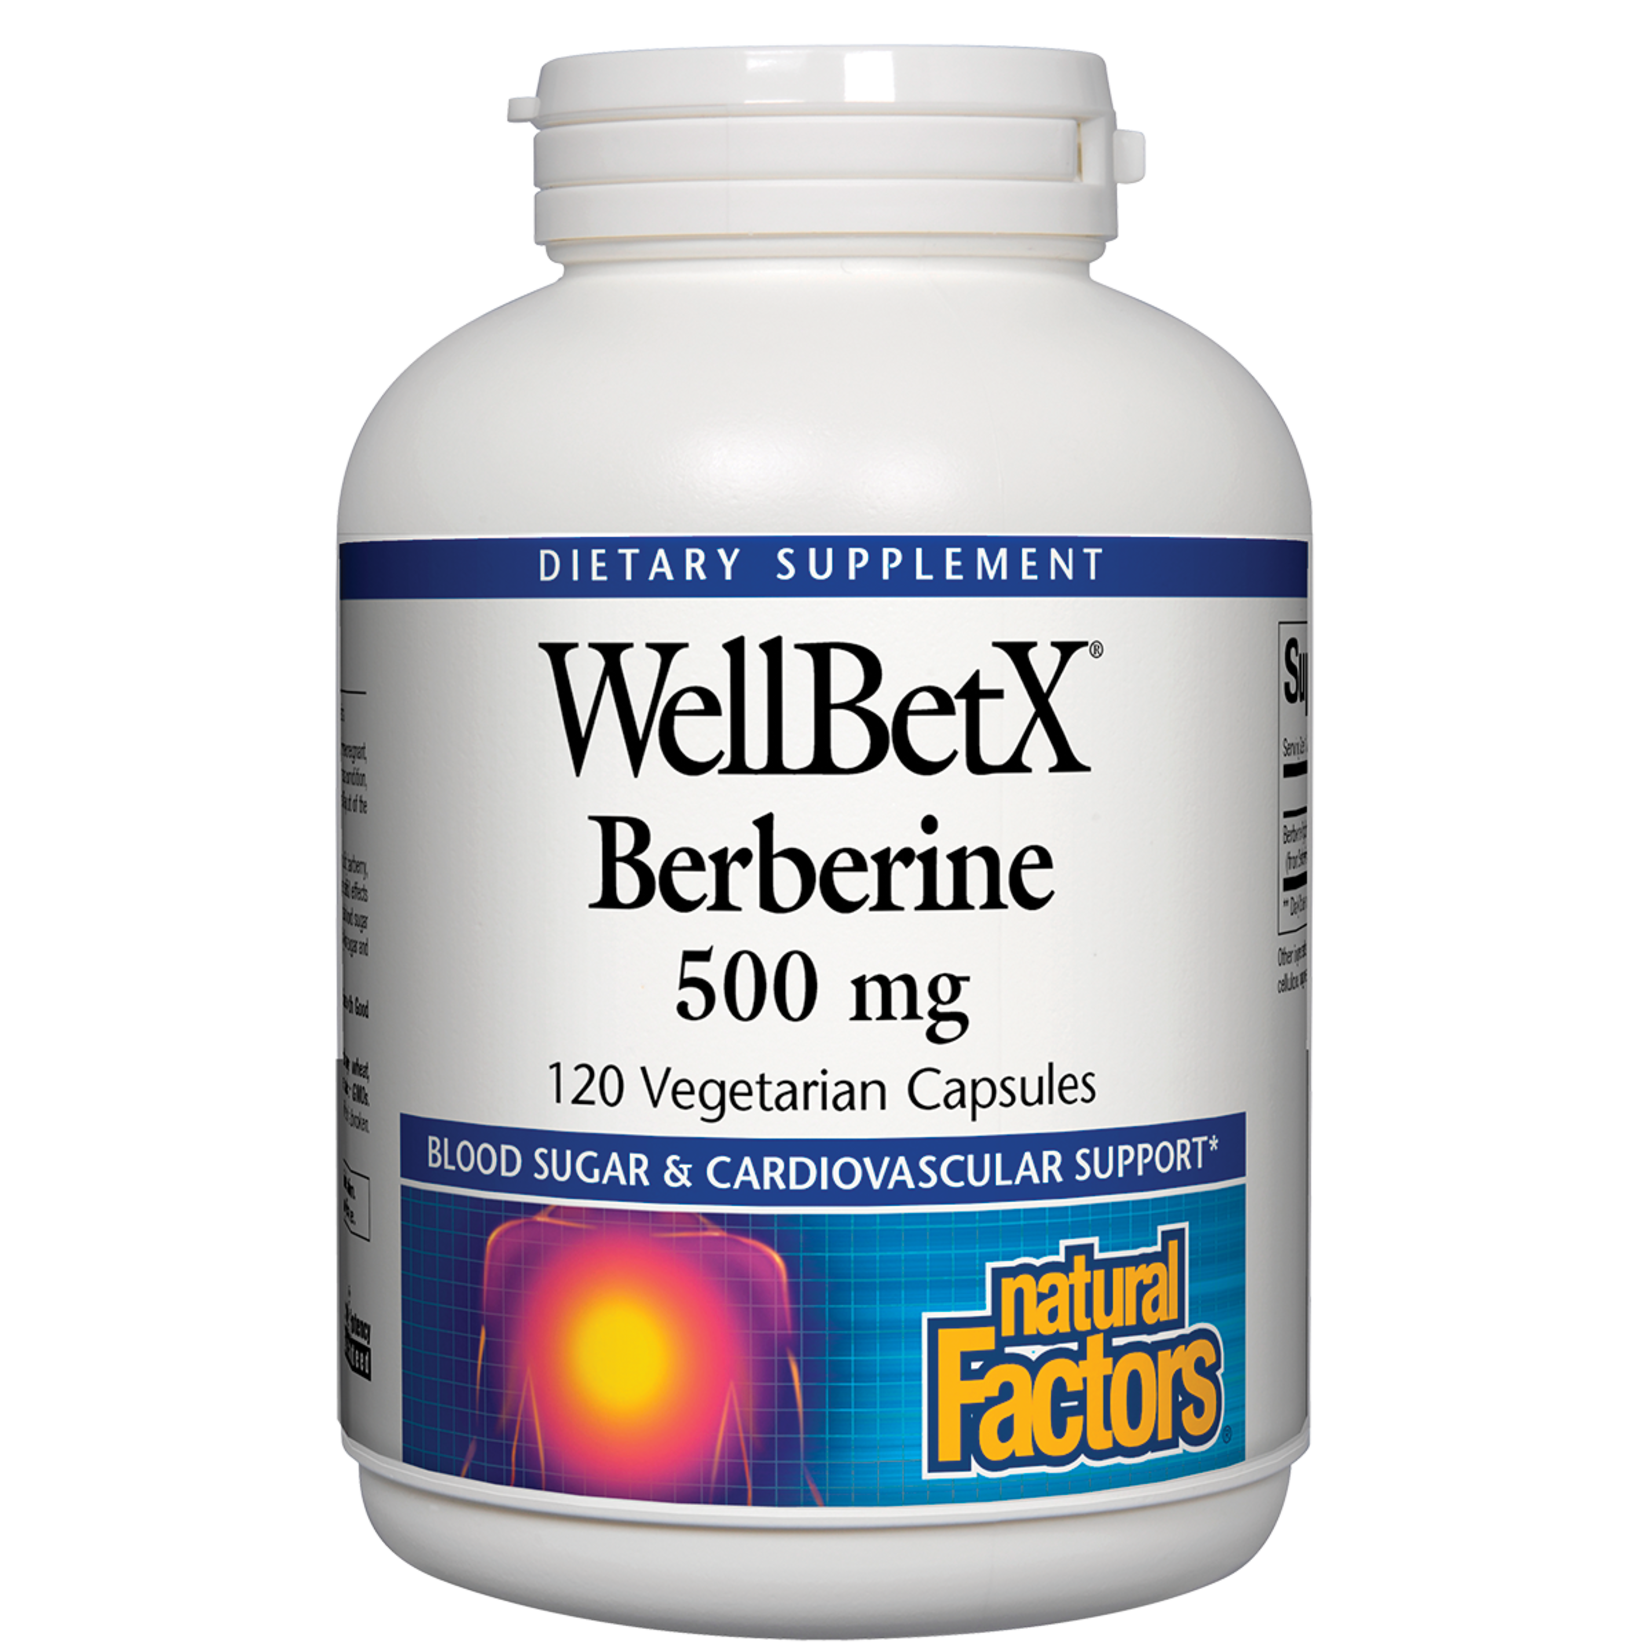 Natural Factors Natural Factors - Wellbetx Berberine 500 mg - 120 Capsules